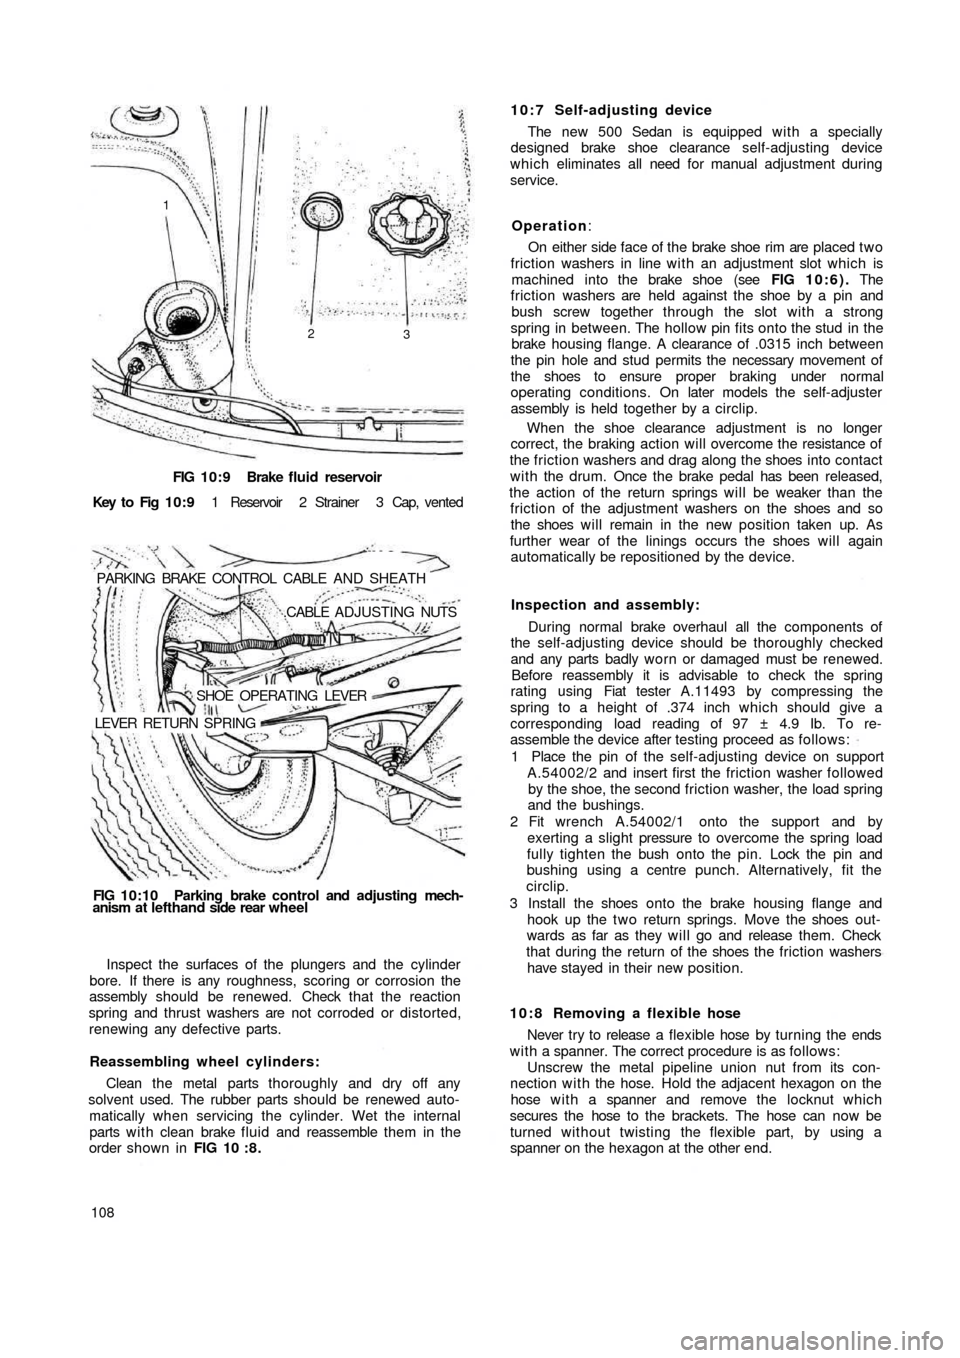 FIAT 500 1967 1.G Workshop Manual FIG 10:9 Brake  fluid reservoir
Key  to  Fig  1 0 : 9 1  Reservoir  2  Strainer  3  Cap,  vented
PARKING  BRAKE  CONTROL  CABLE  AND  SHEATH
.CABLE  ADJUSTING NUTS
SHOE  OPERATING  LEVER
LEVER  RETURN